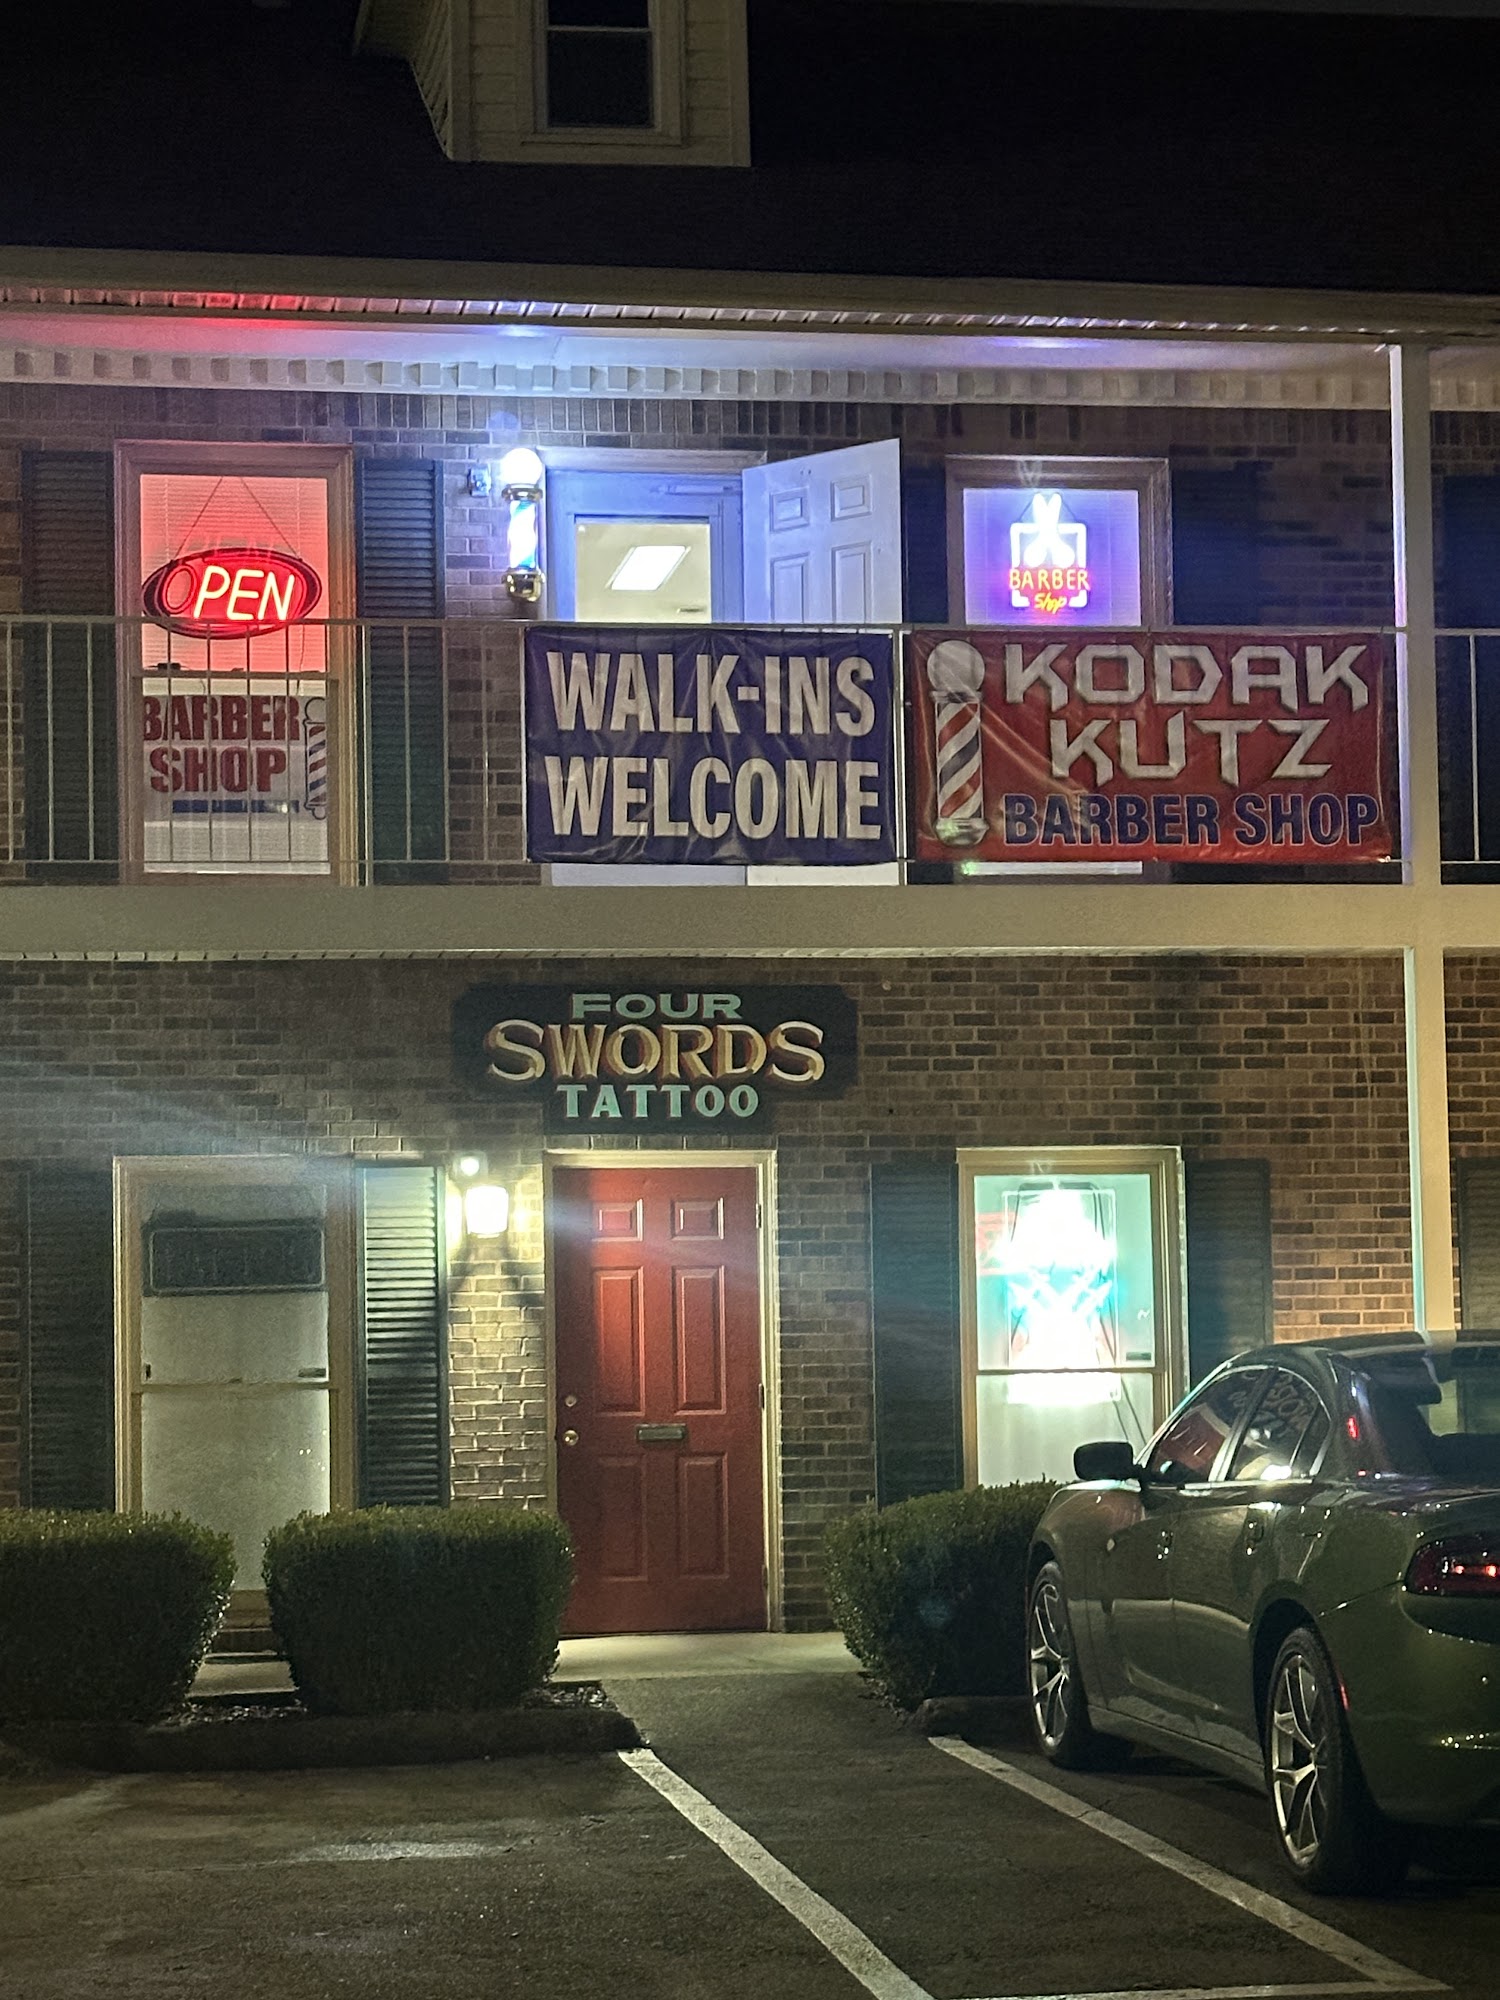 Kodak Kuts Barber Shop